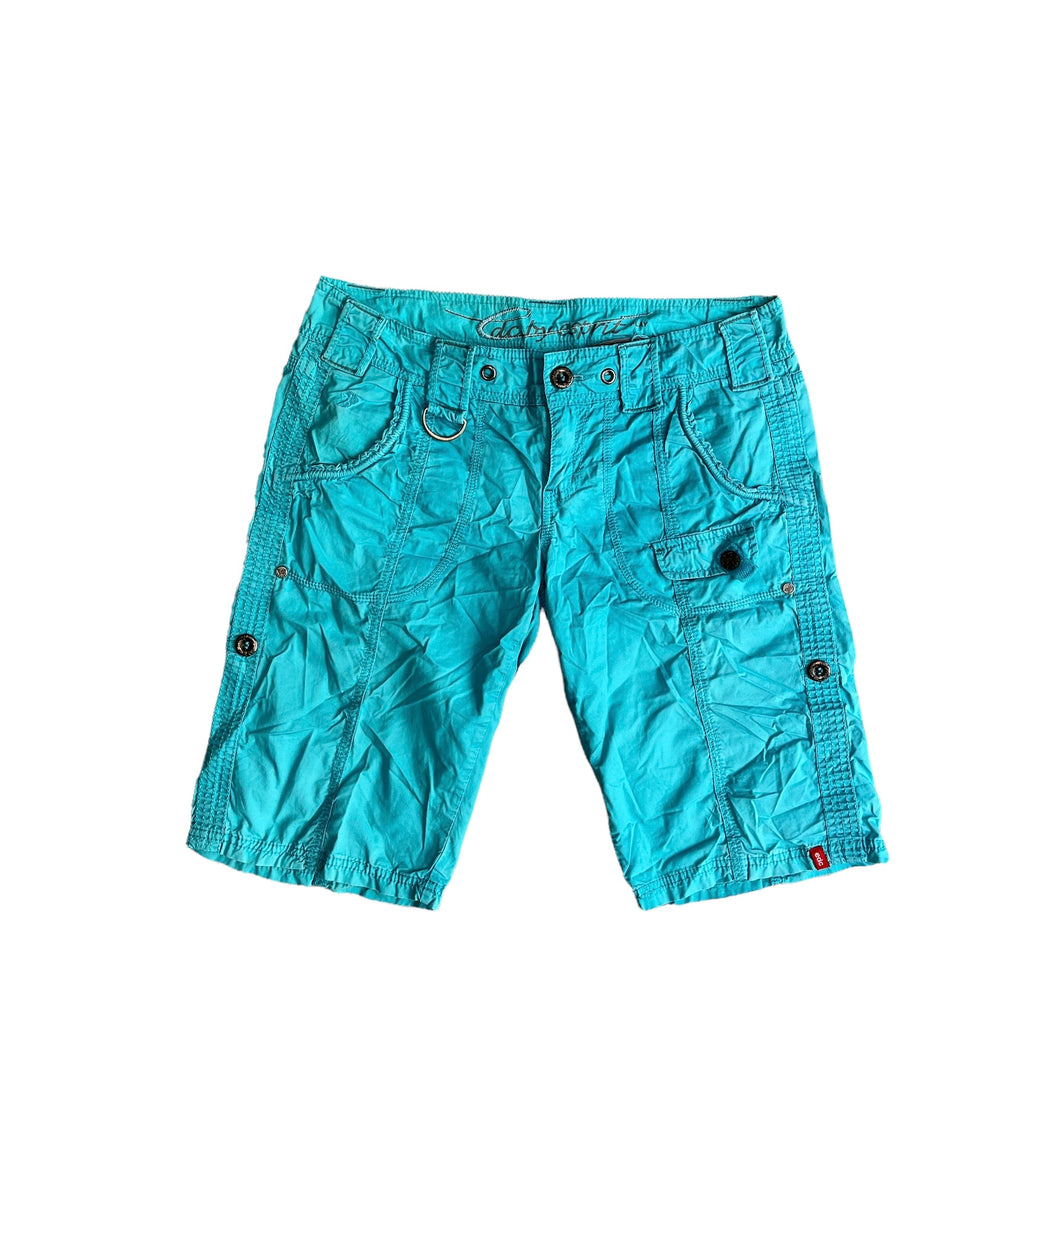 Edc cargo shorts